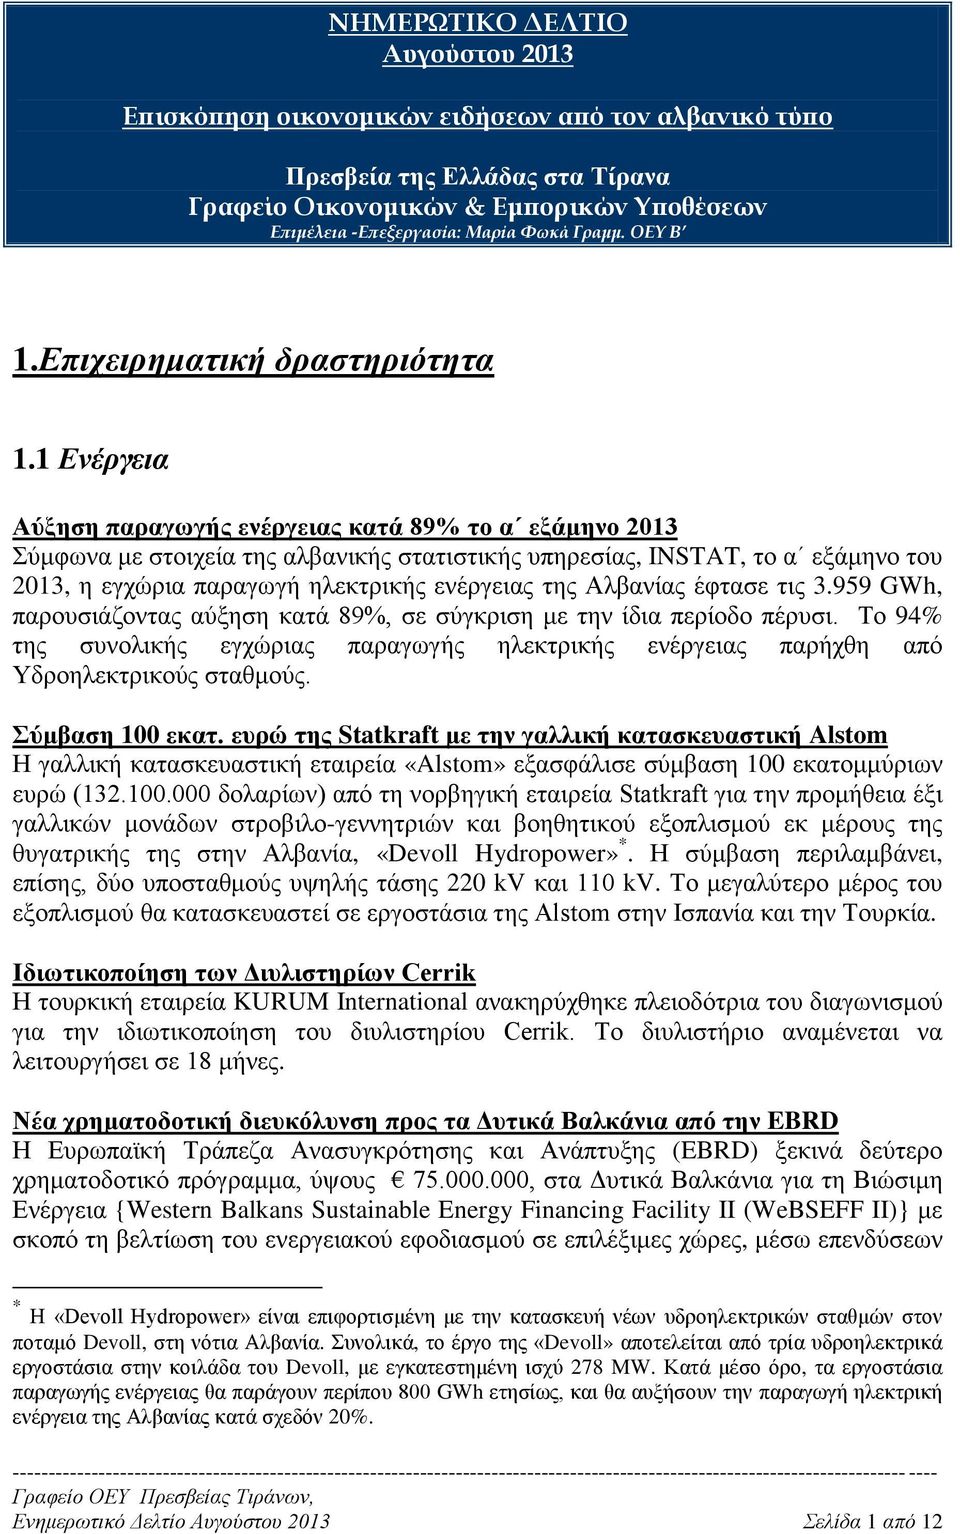 1 Ενέργεια Αύξηση παραγωγής ενέργειας κατά 89% το α εξάμηνο 2013 Σύμφωνα με στοιχεία της αλβανικής στατιστικής υπηρεσίας, INSTAT, το α εξάμηνο του 2013, η εγχώρια παραγωγή ηλεκτρικής ενέργειας της